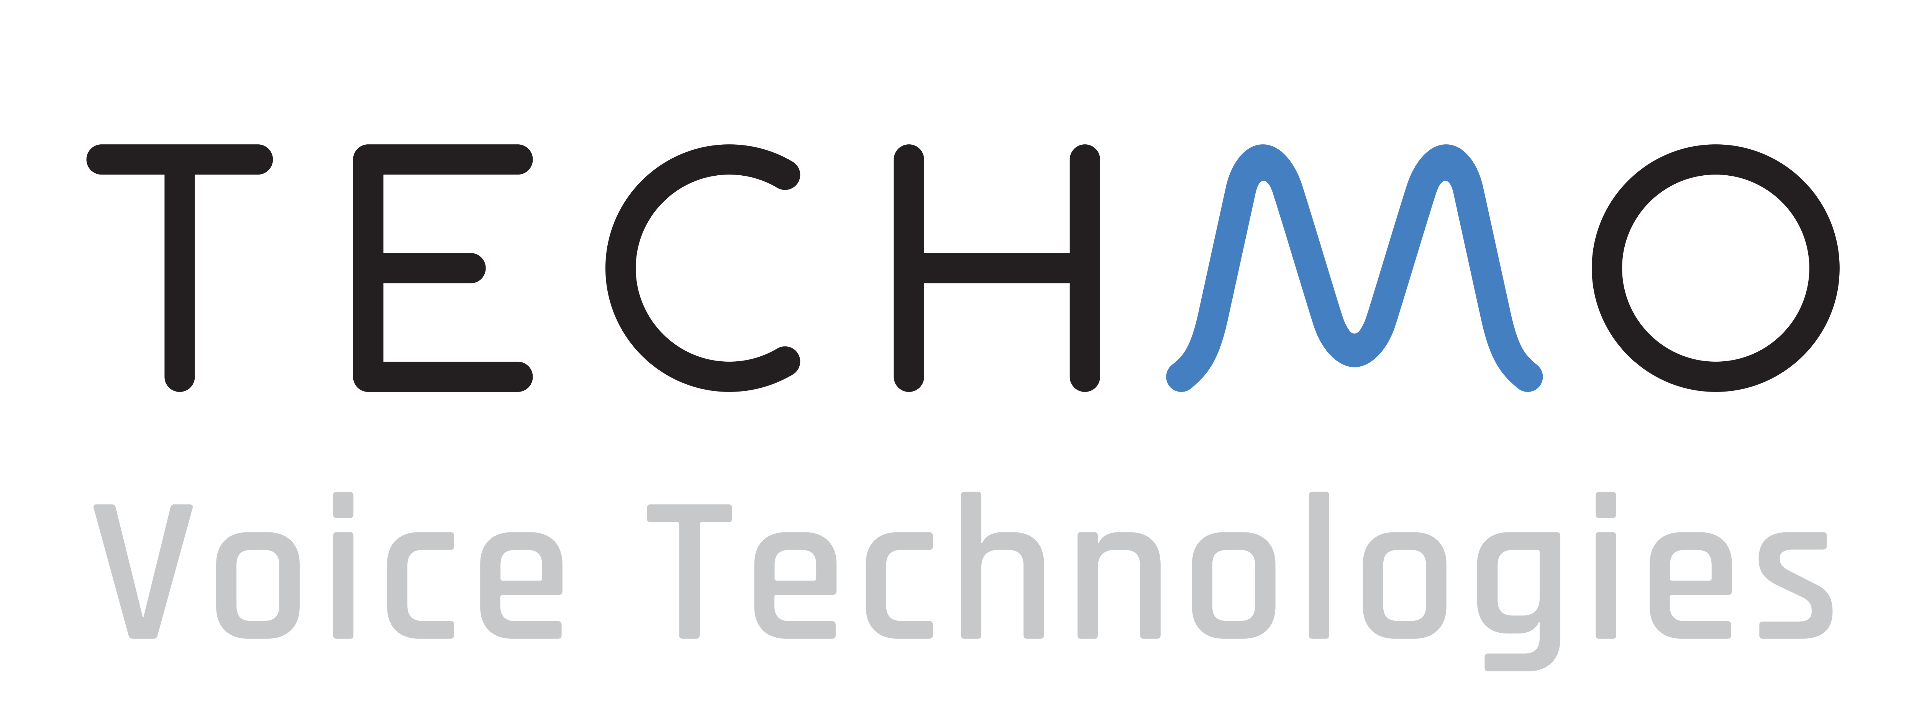 techmo_logo-1.png